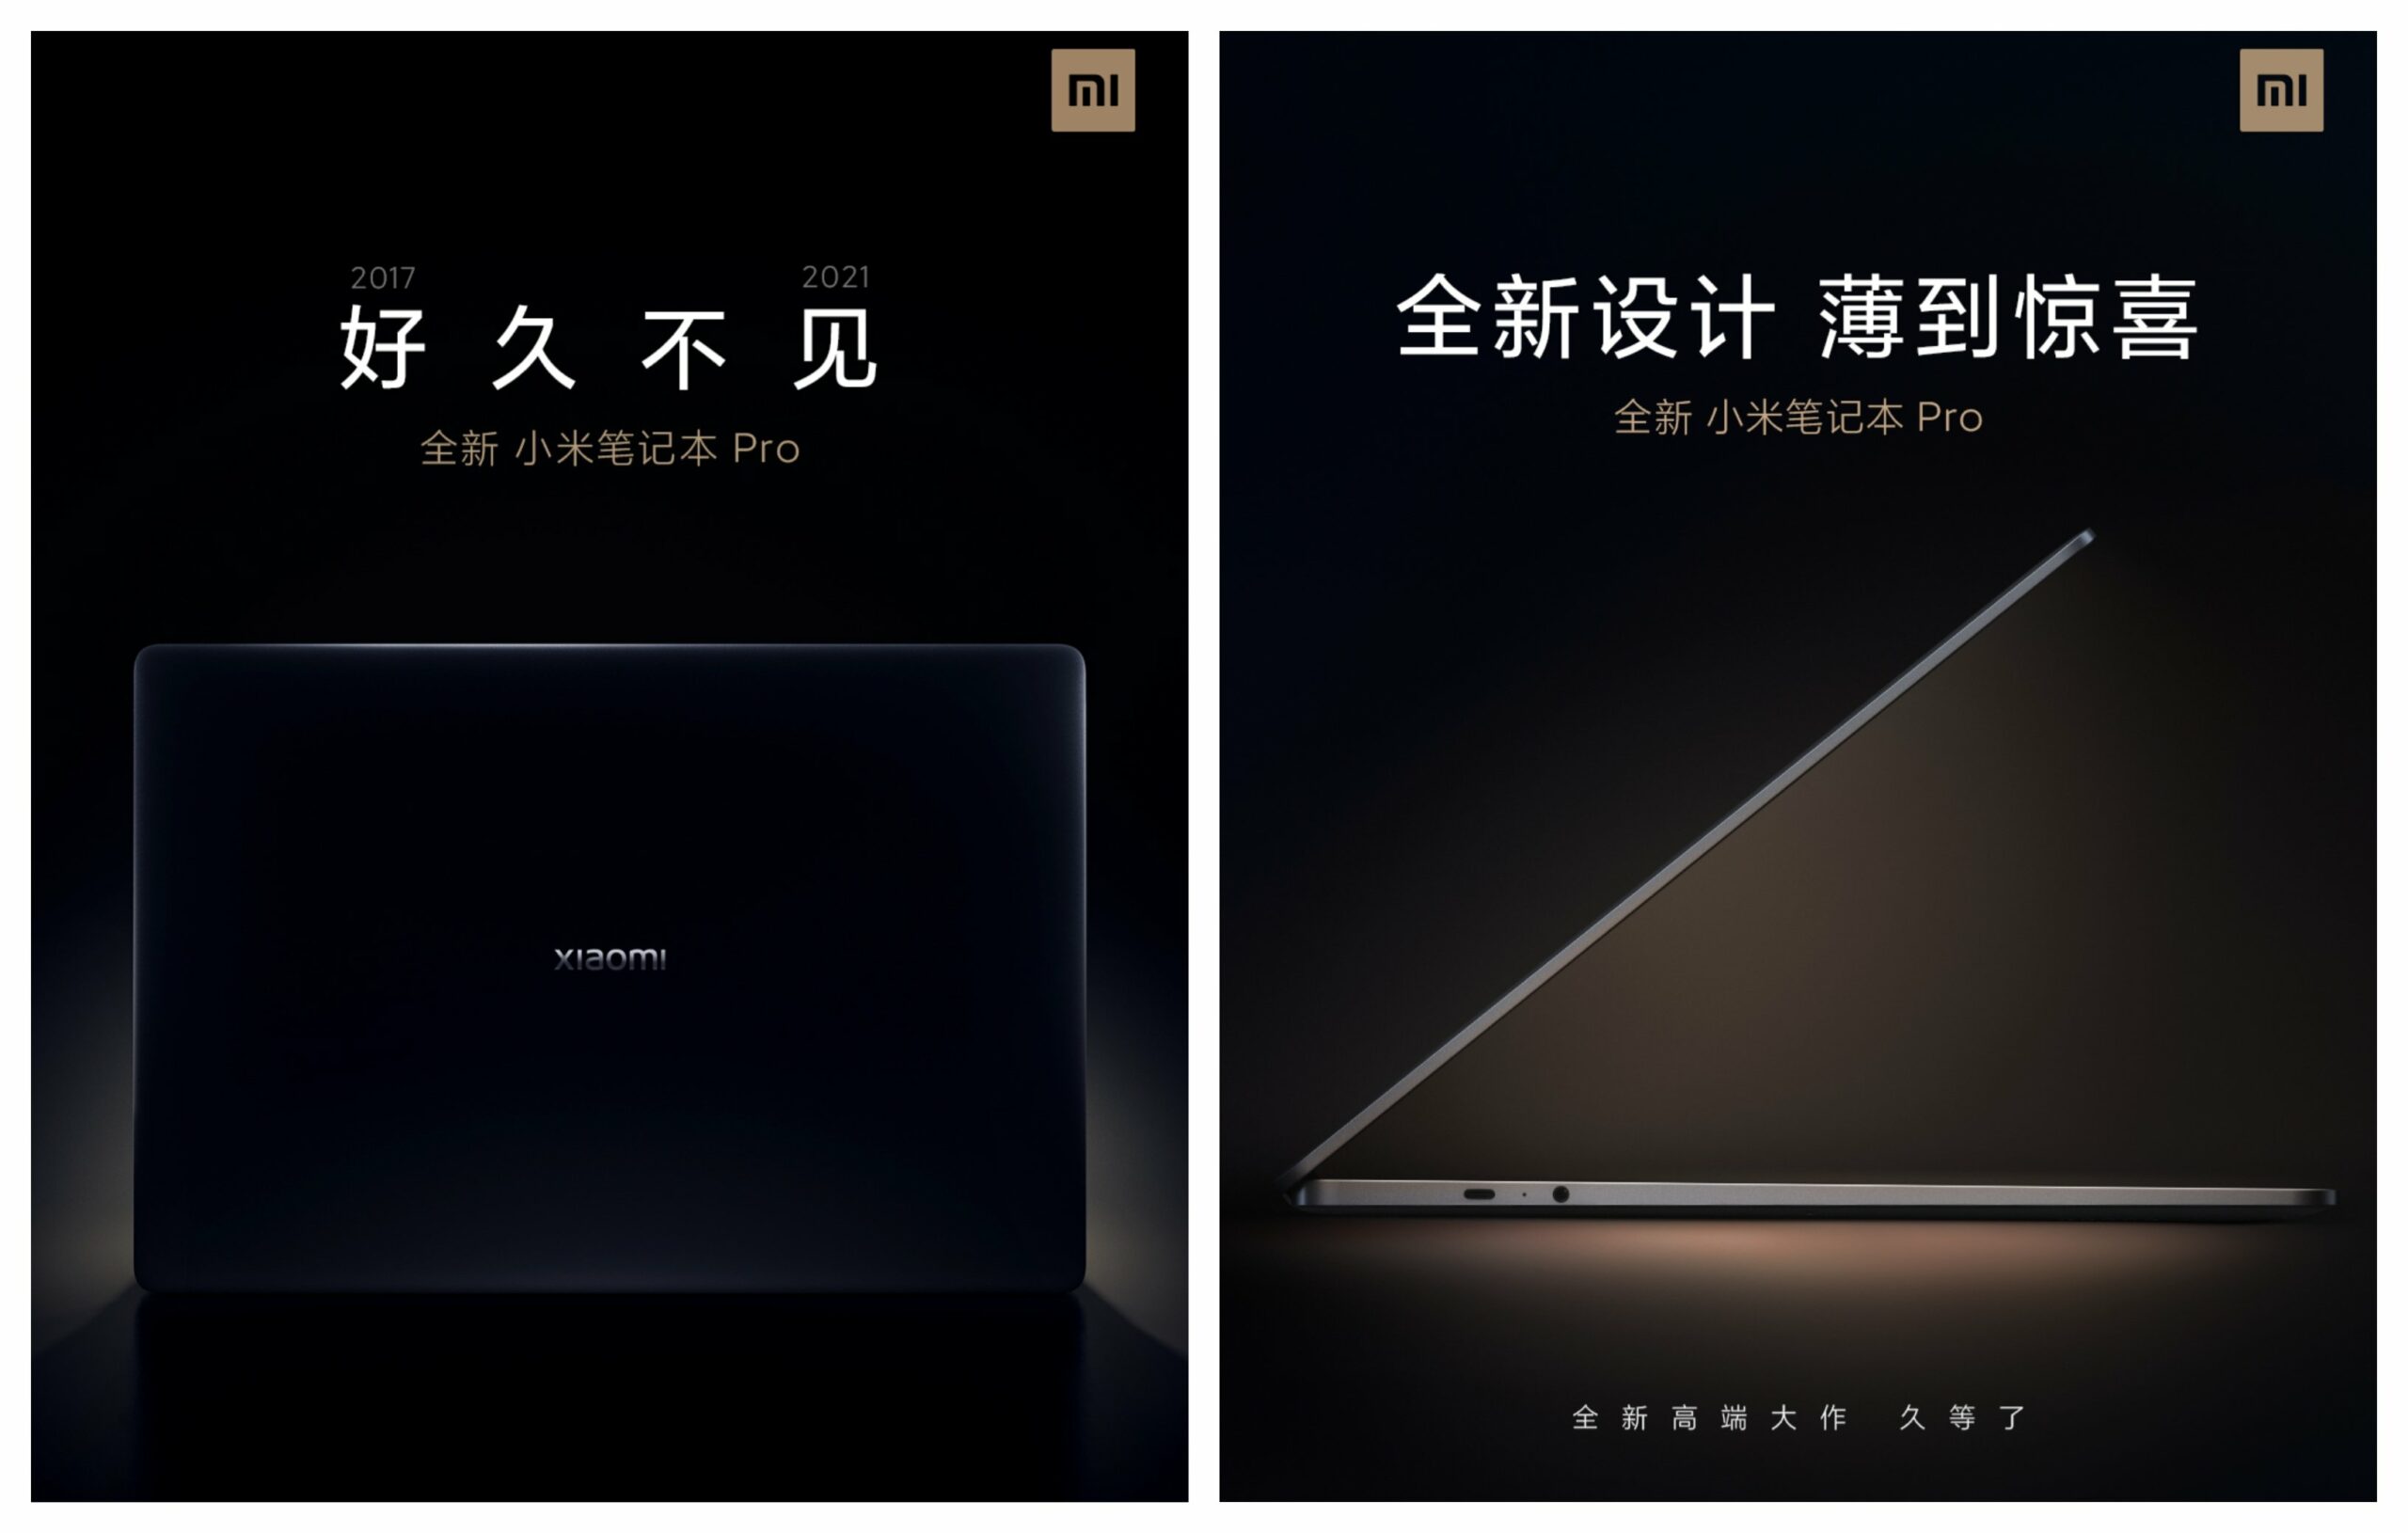 Tampok na 2021 ang Xiaomi Mi Notebook Pro 01 Teaser